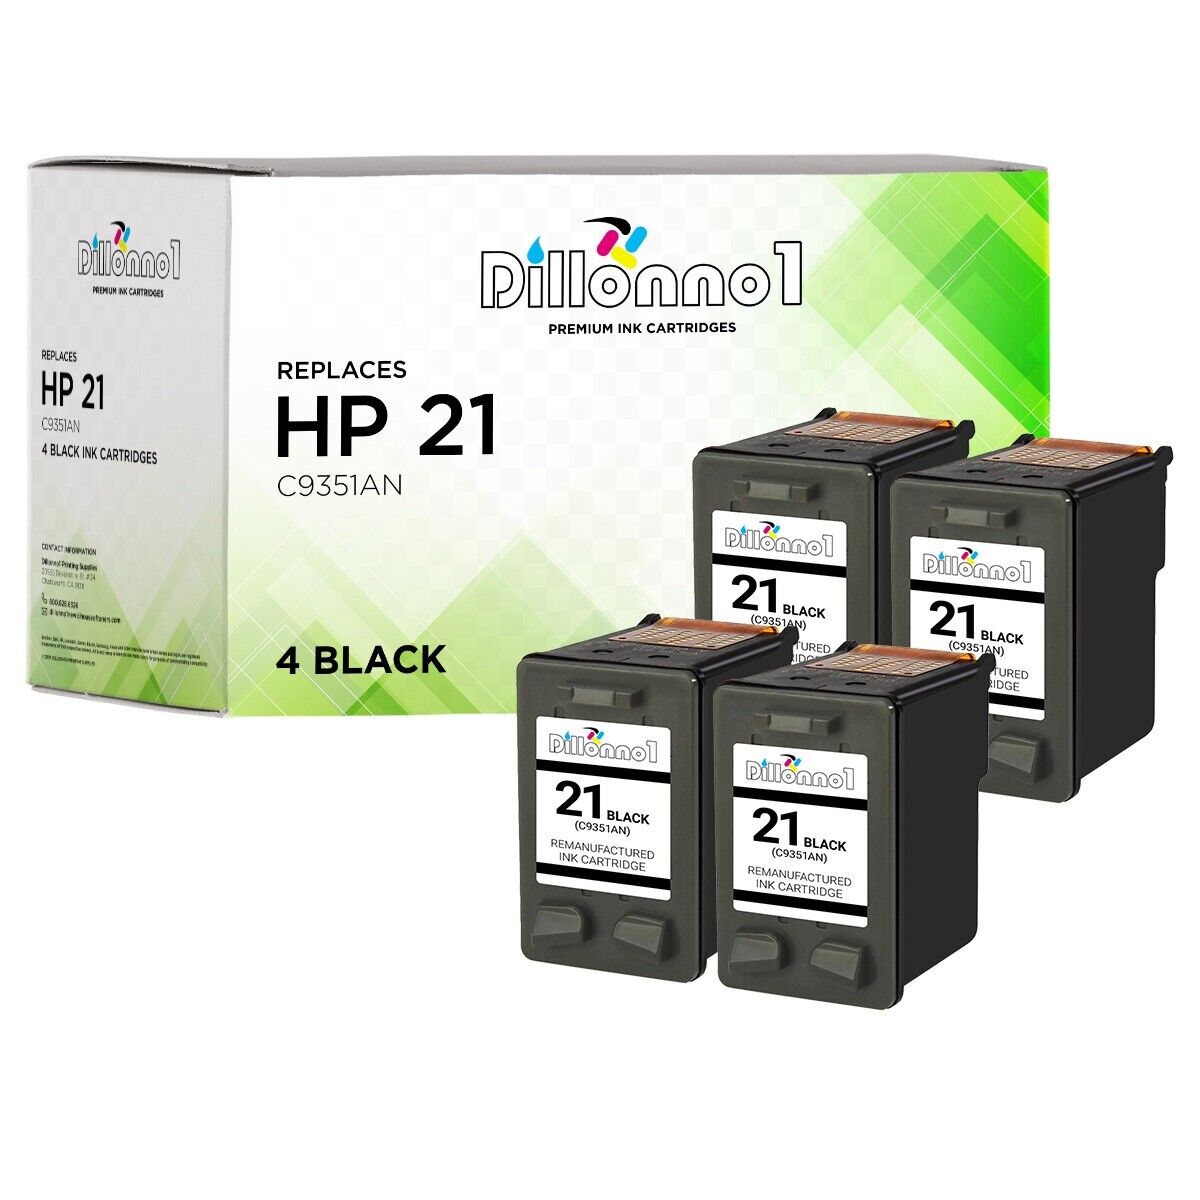 4 PACK For HP 21 Black Cartridges For Deskjet 3910 3915 3920 3930 3938 3940